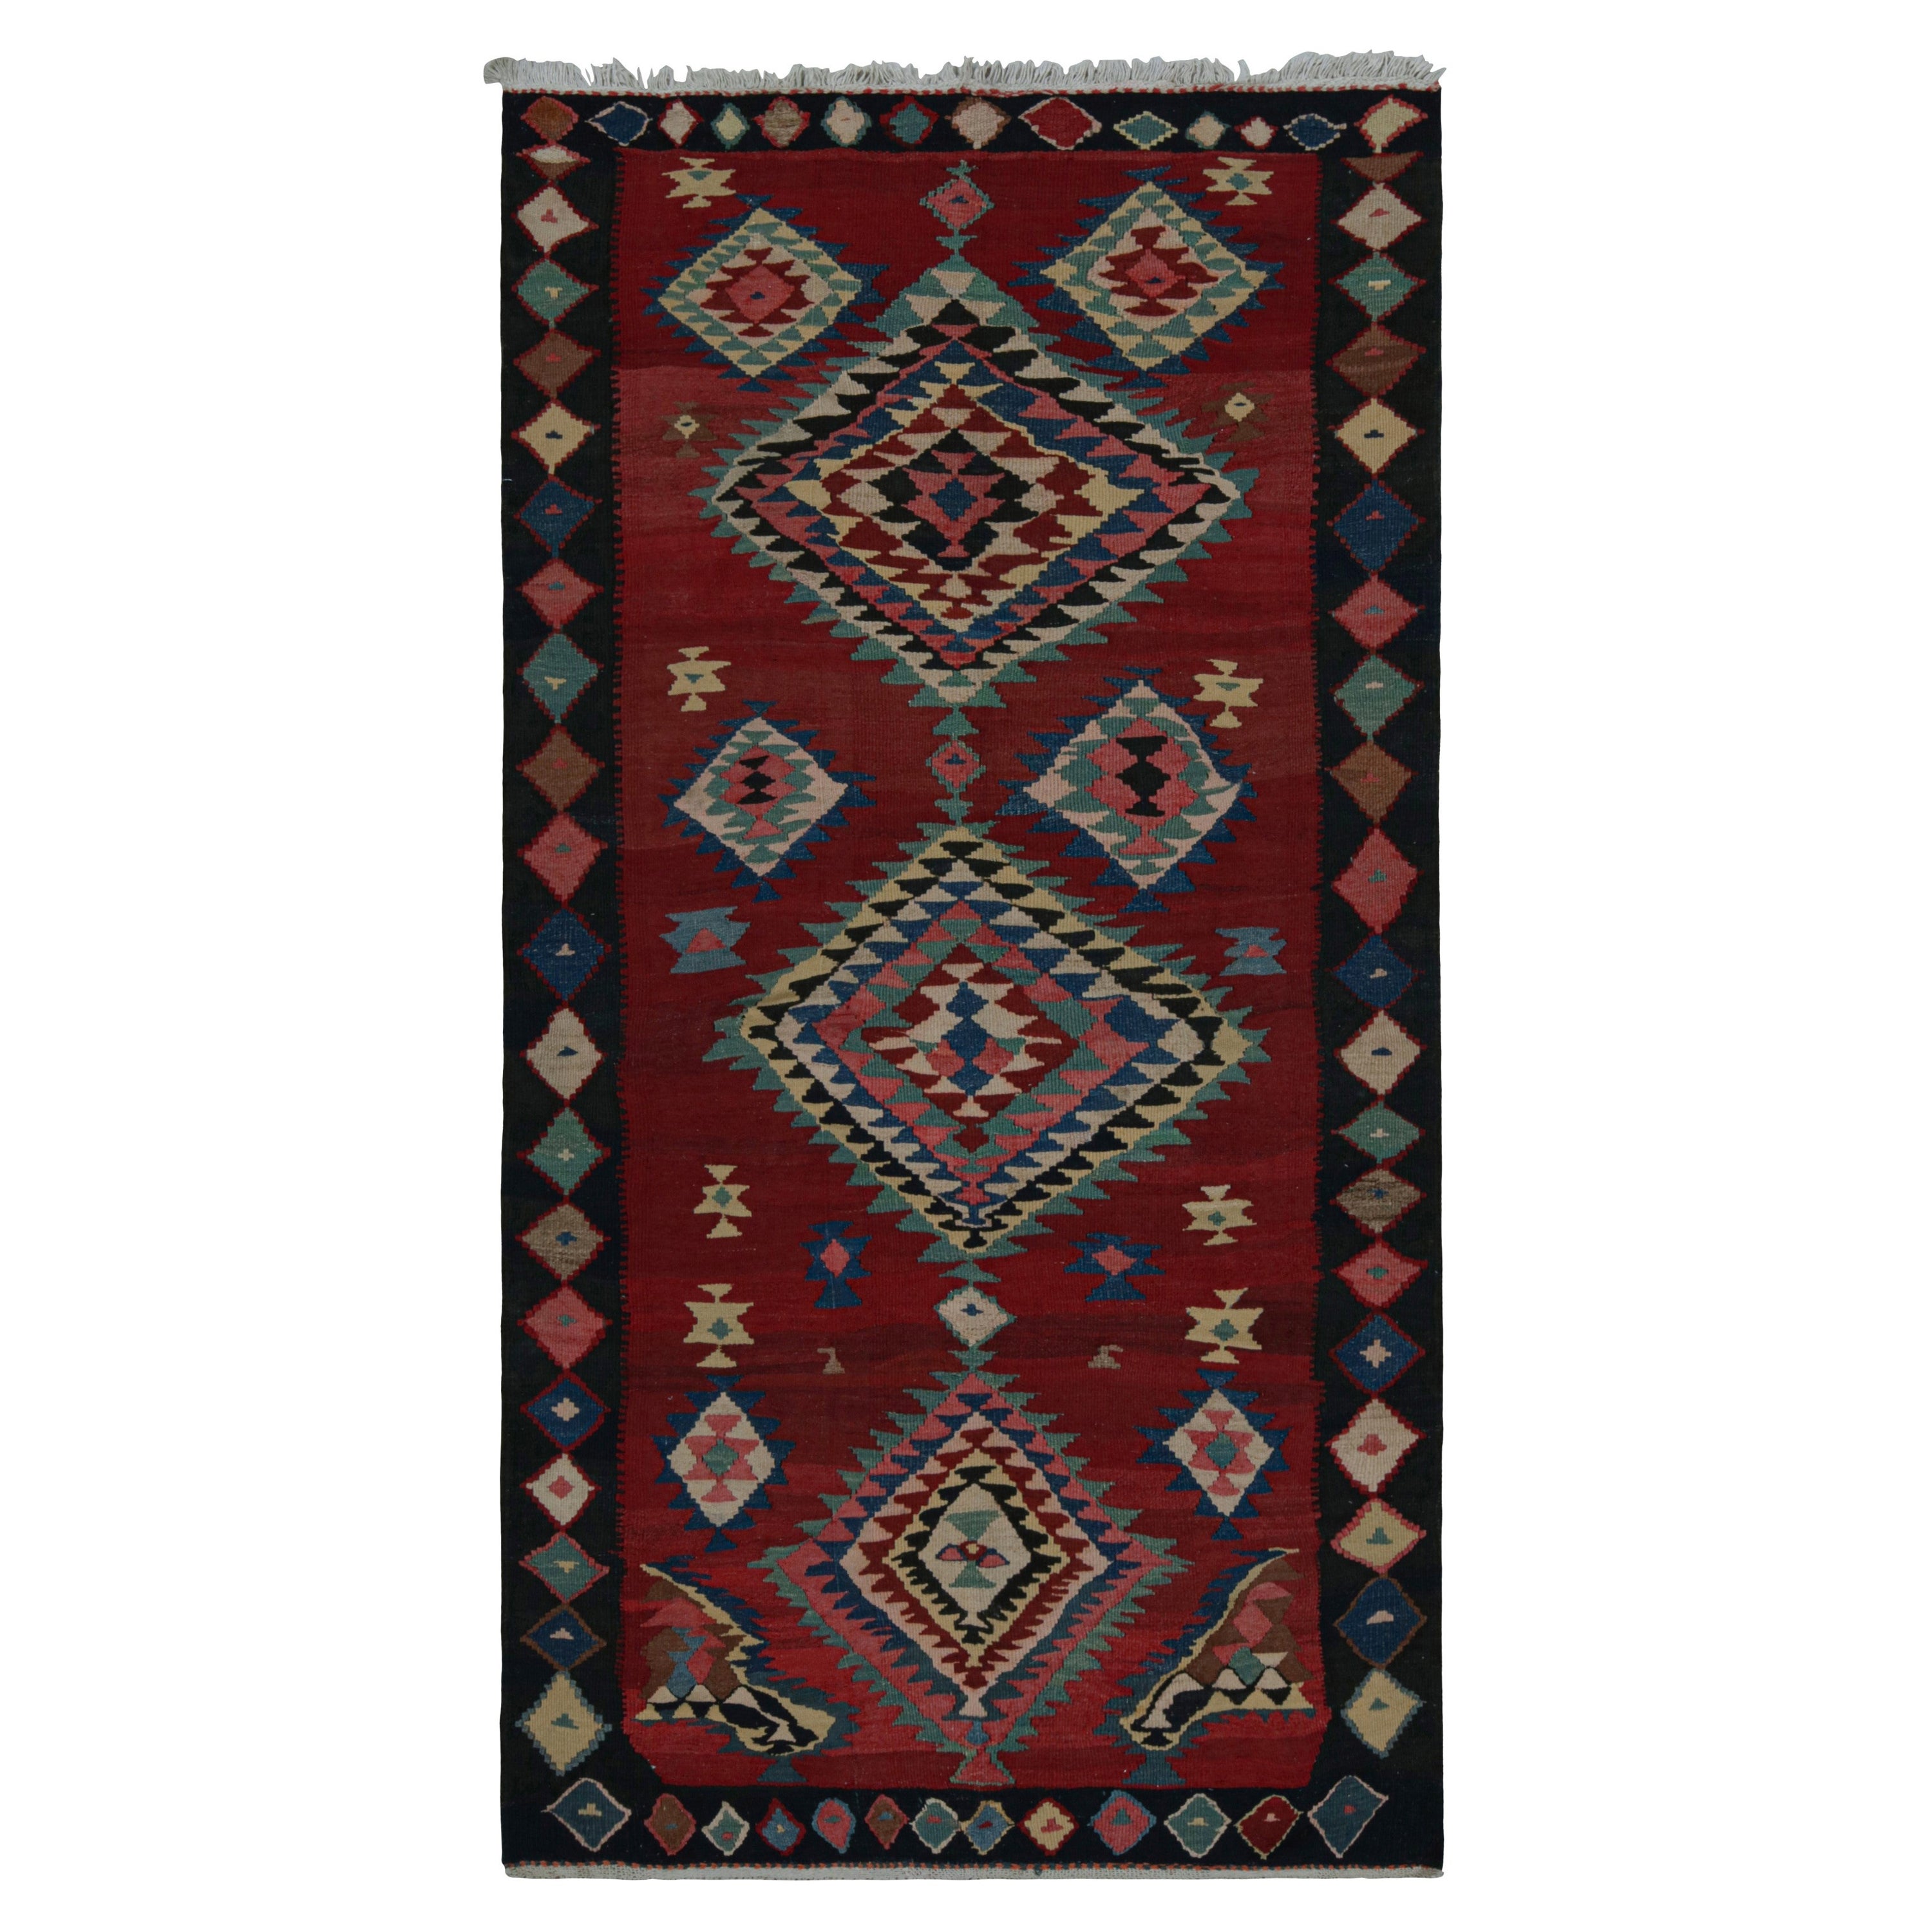 Tapis Kilim afghan tribal vintage, avec motifs géométriques, de Rug & Kilim